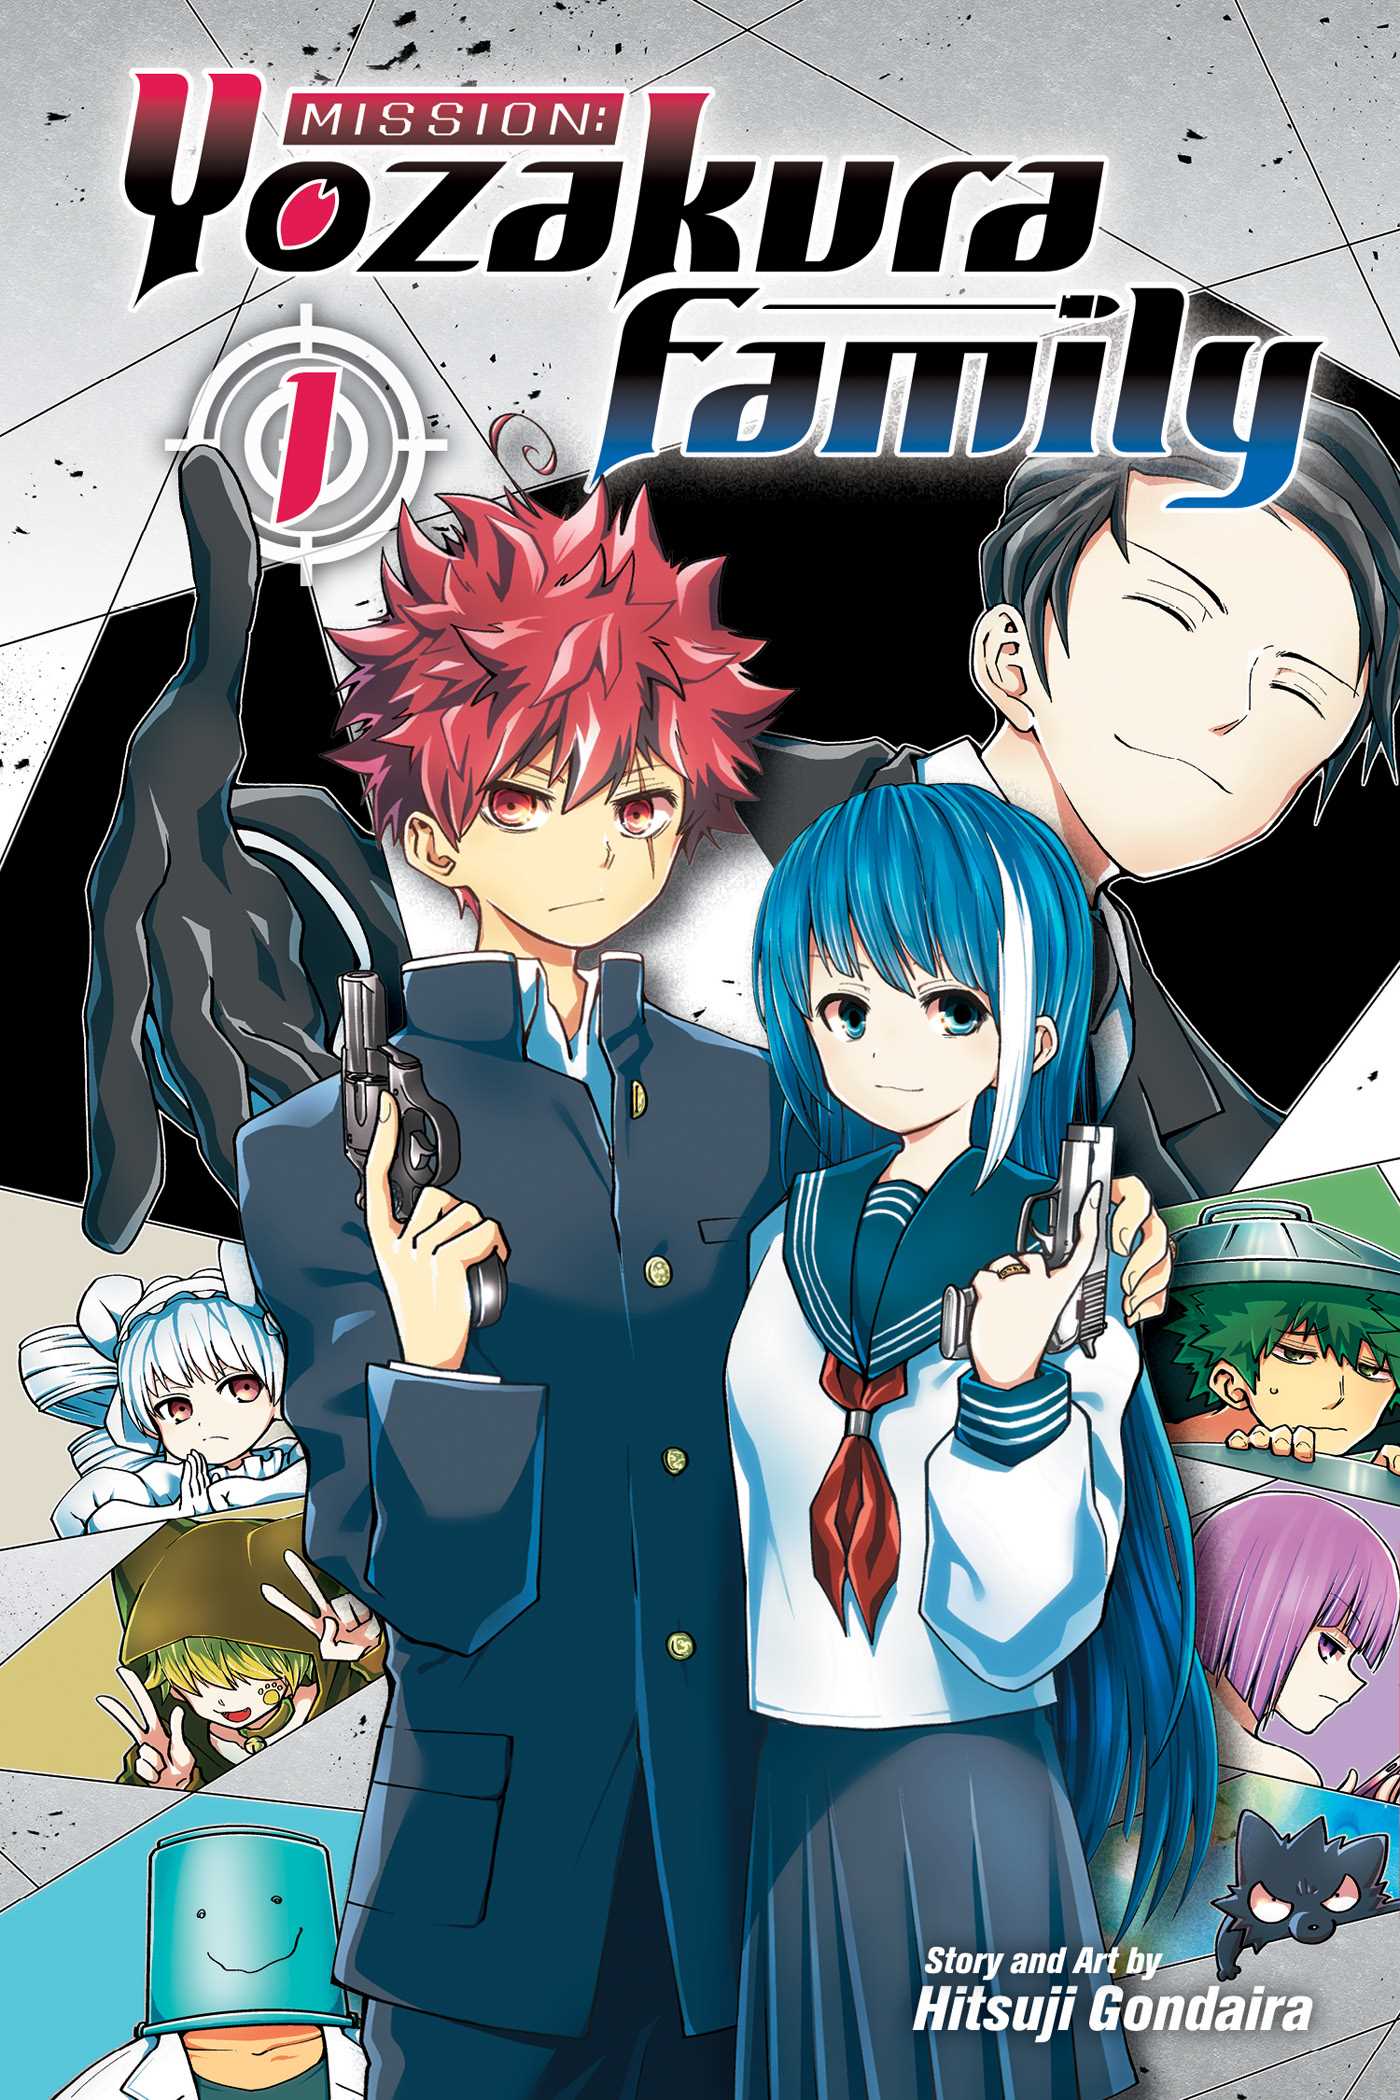 Mission: The Yozakura Family